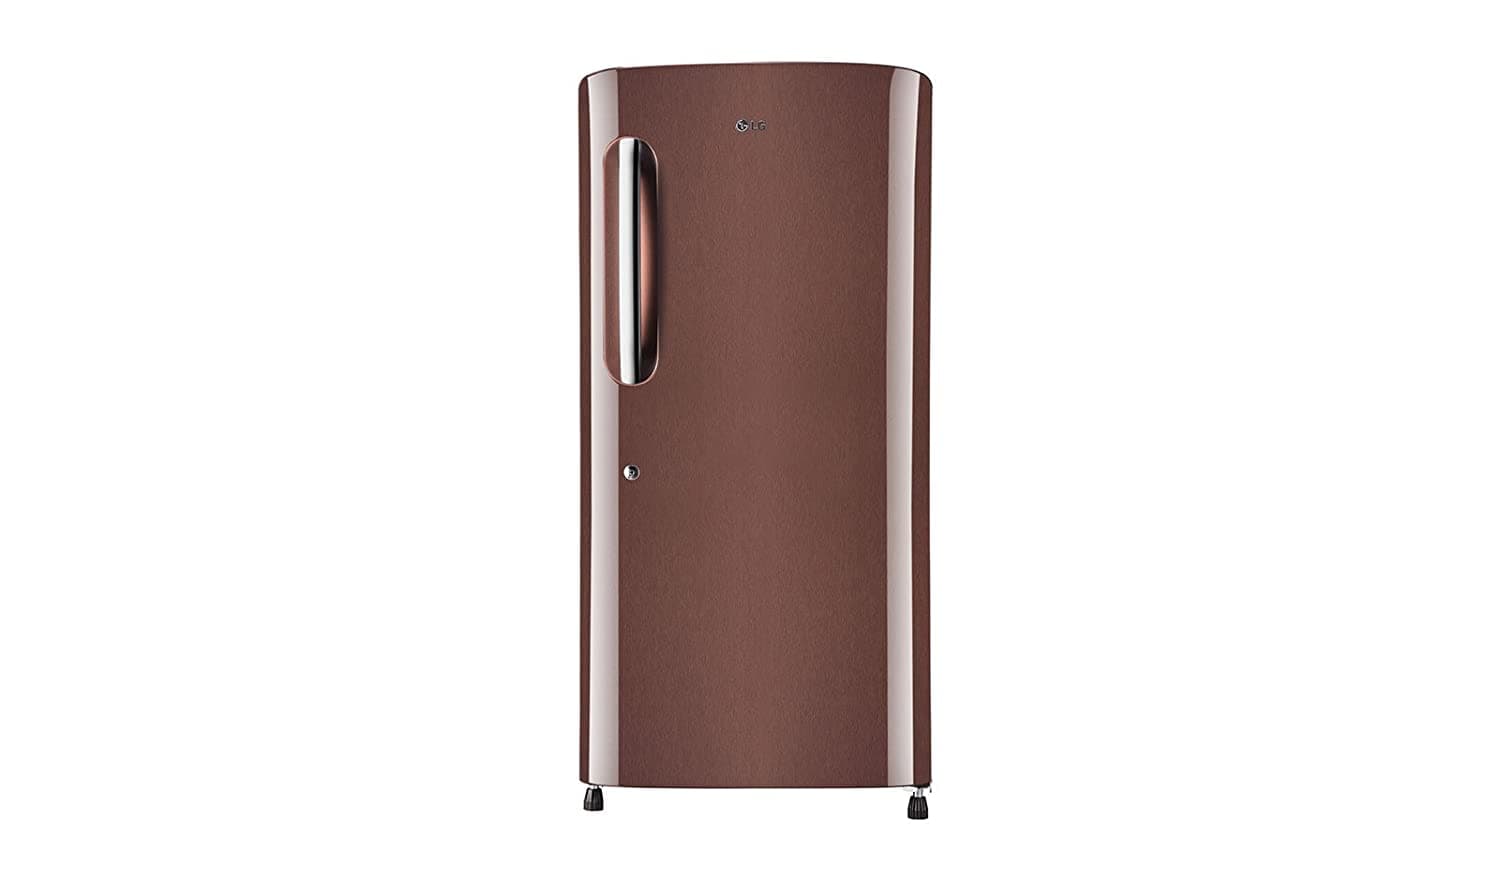 LG GL-B221AASY 215 Ltr Single Door Refrigerator